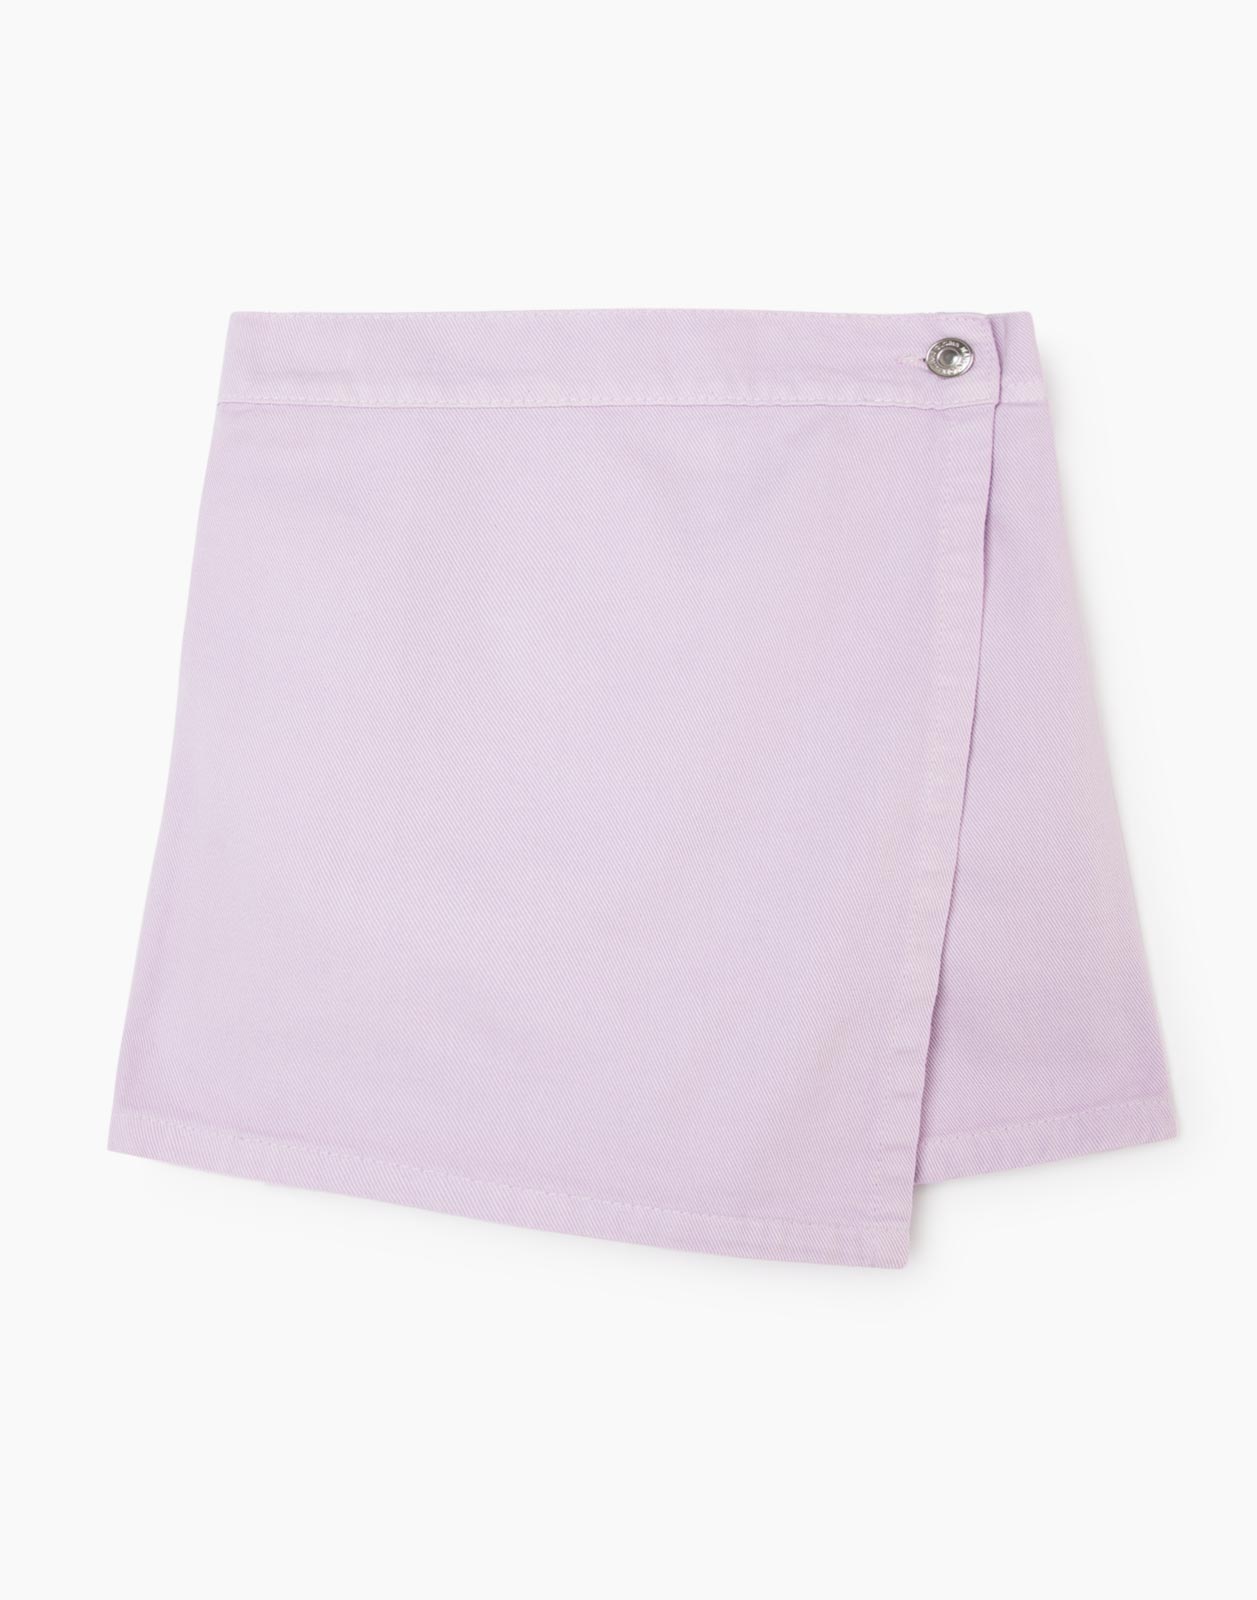 Сиреневая джинсовая юбка-шорты для девочки р.116